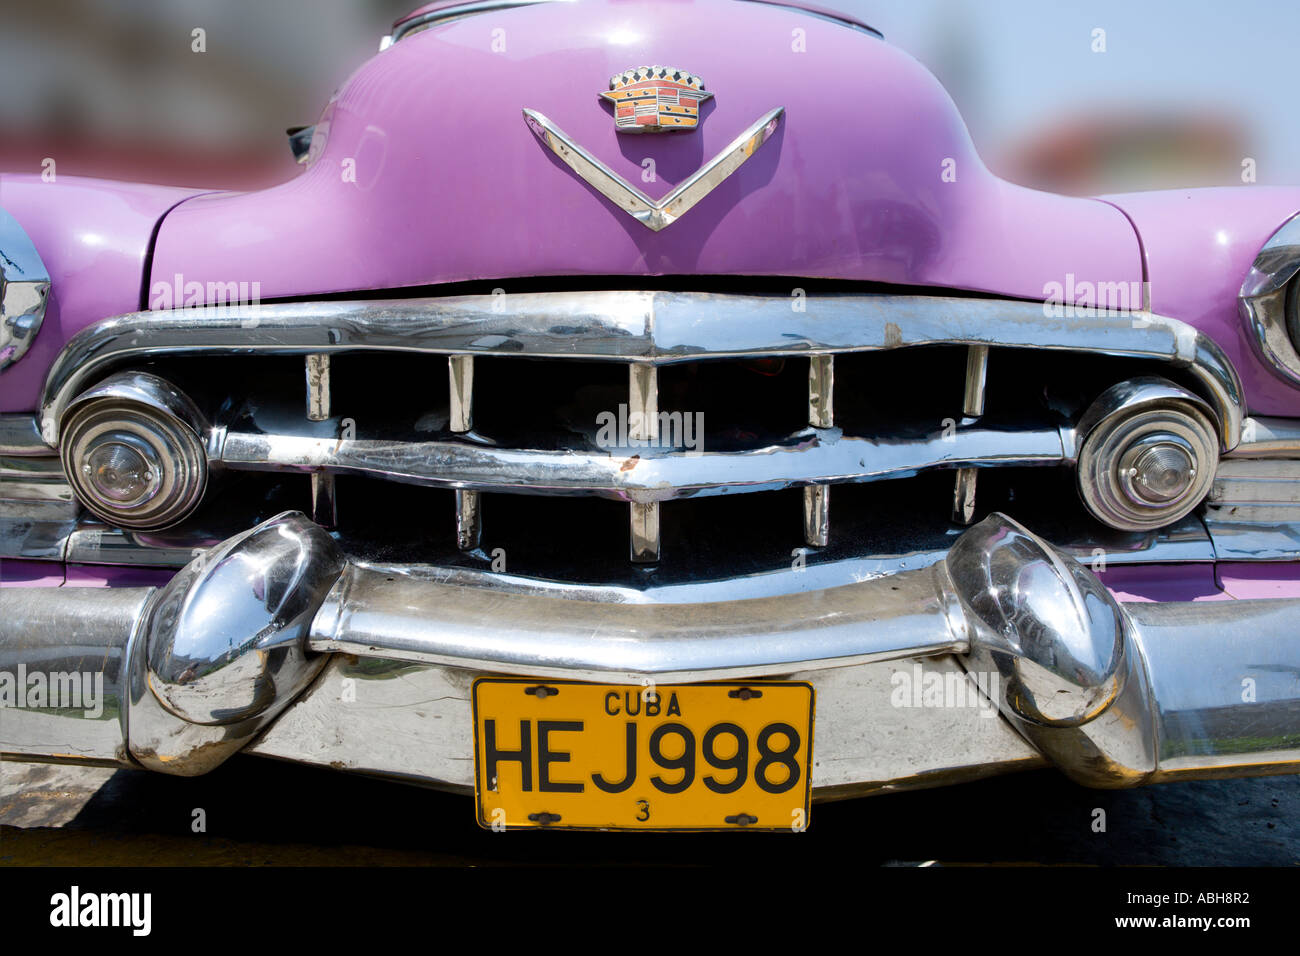 Alte amerikanische Autos, Habana Vieja, Havanna, Kuba, Caribbean Stockfoto